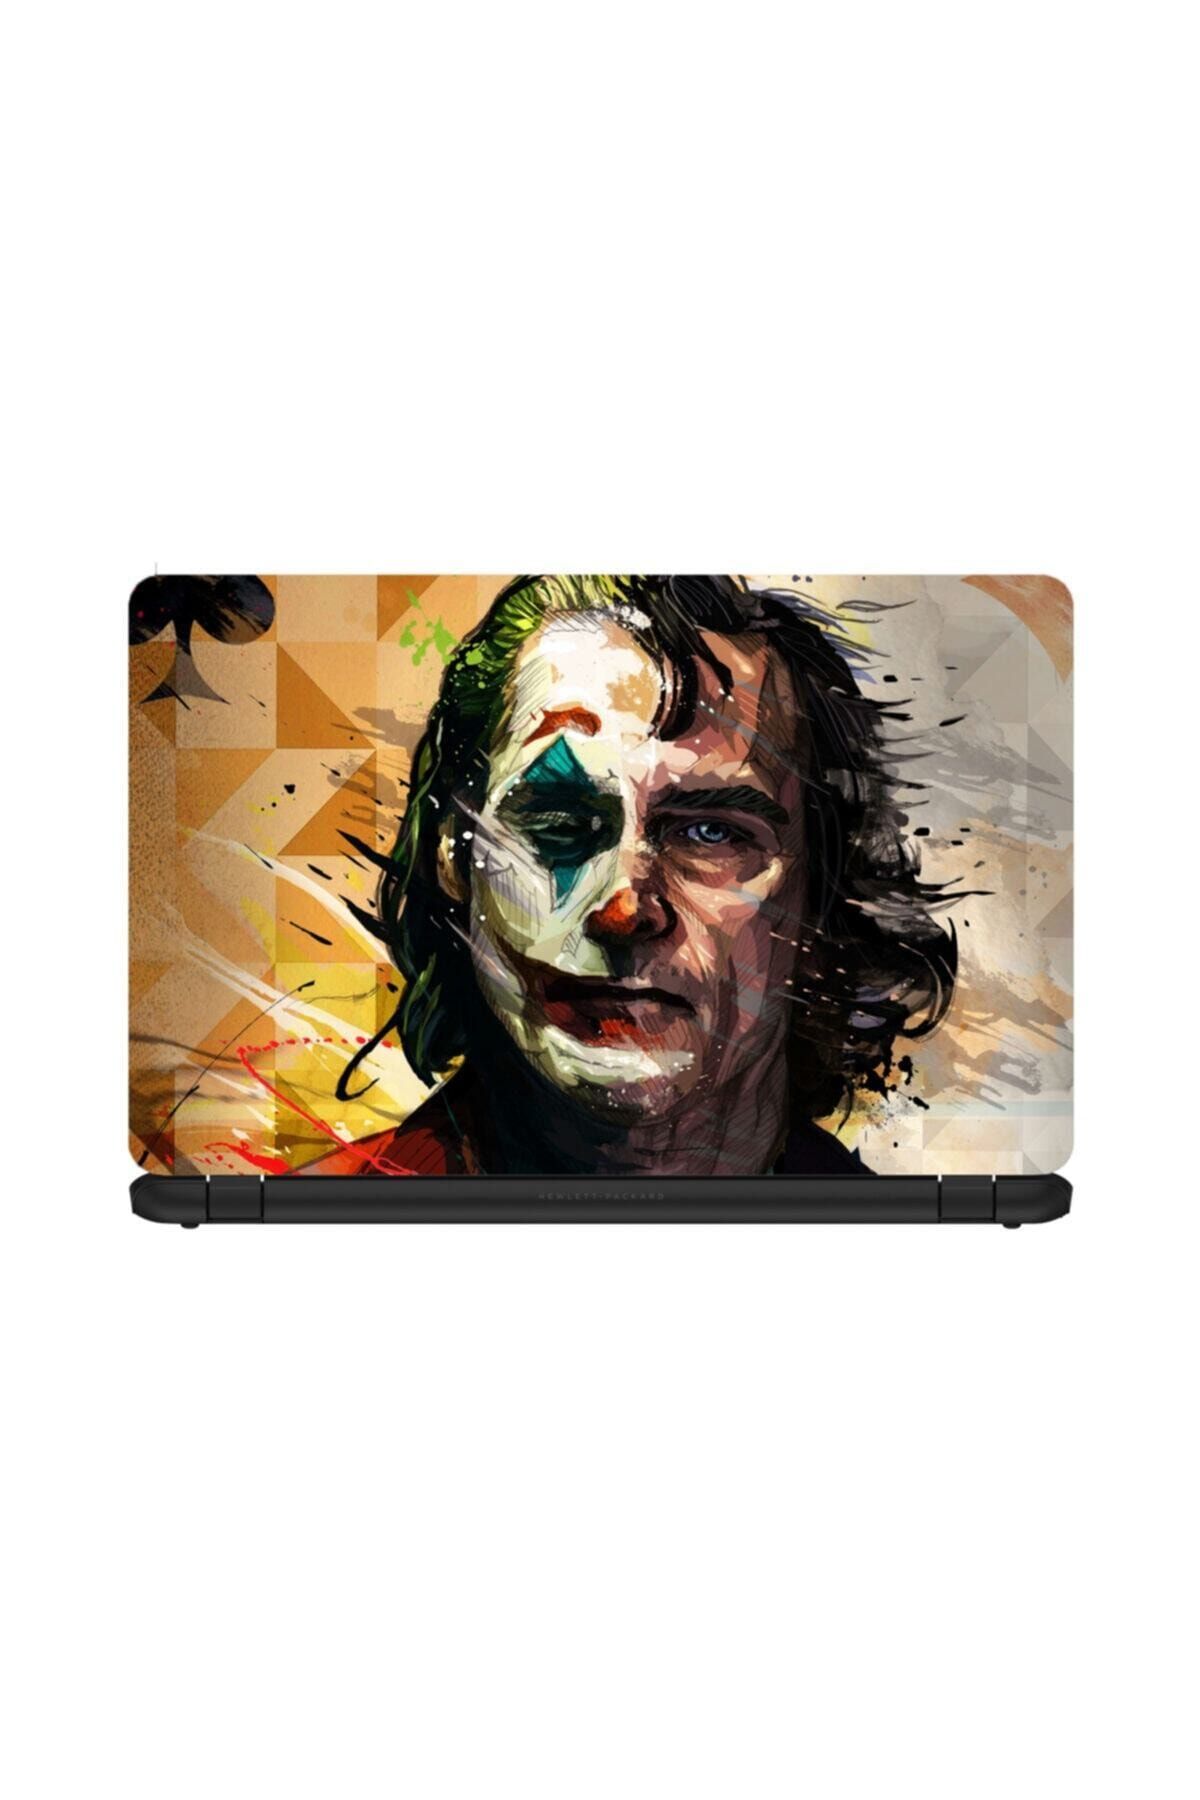 KT Decor Joker Art Laptop Sticker 15.6 Inch